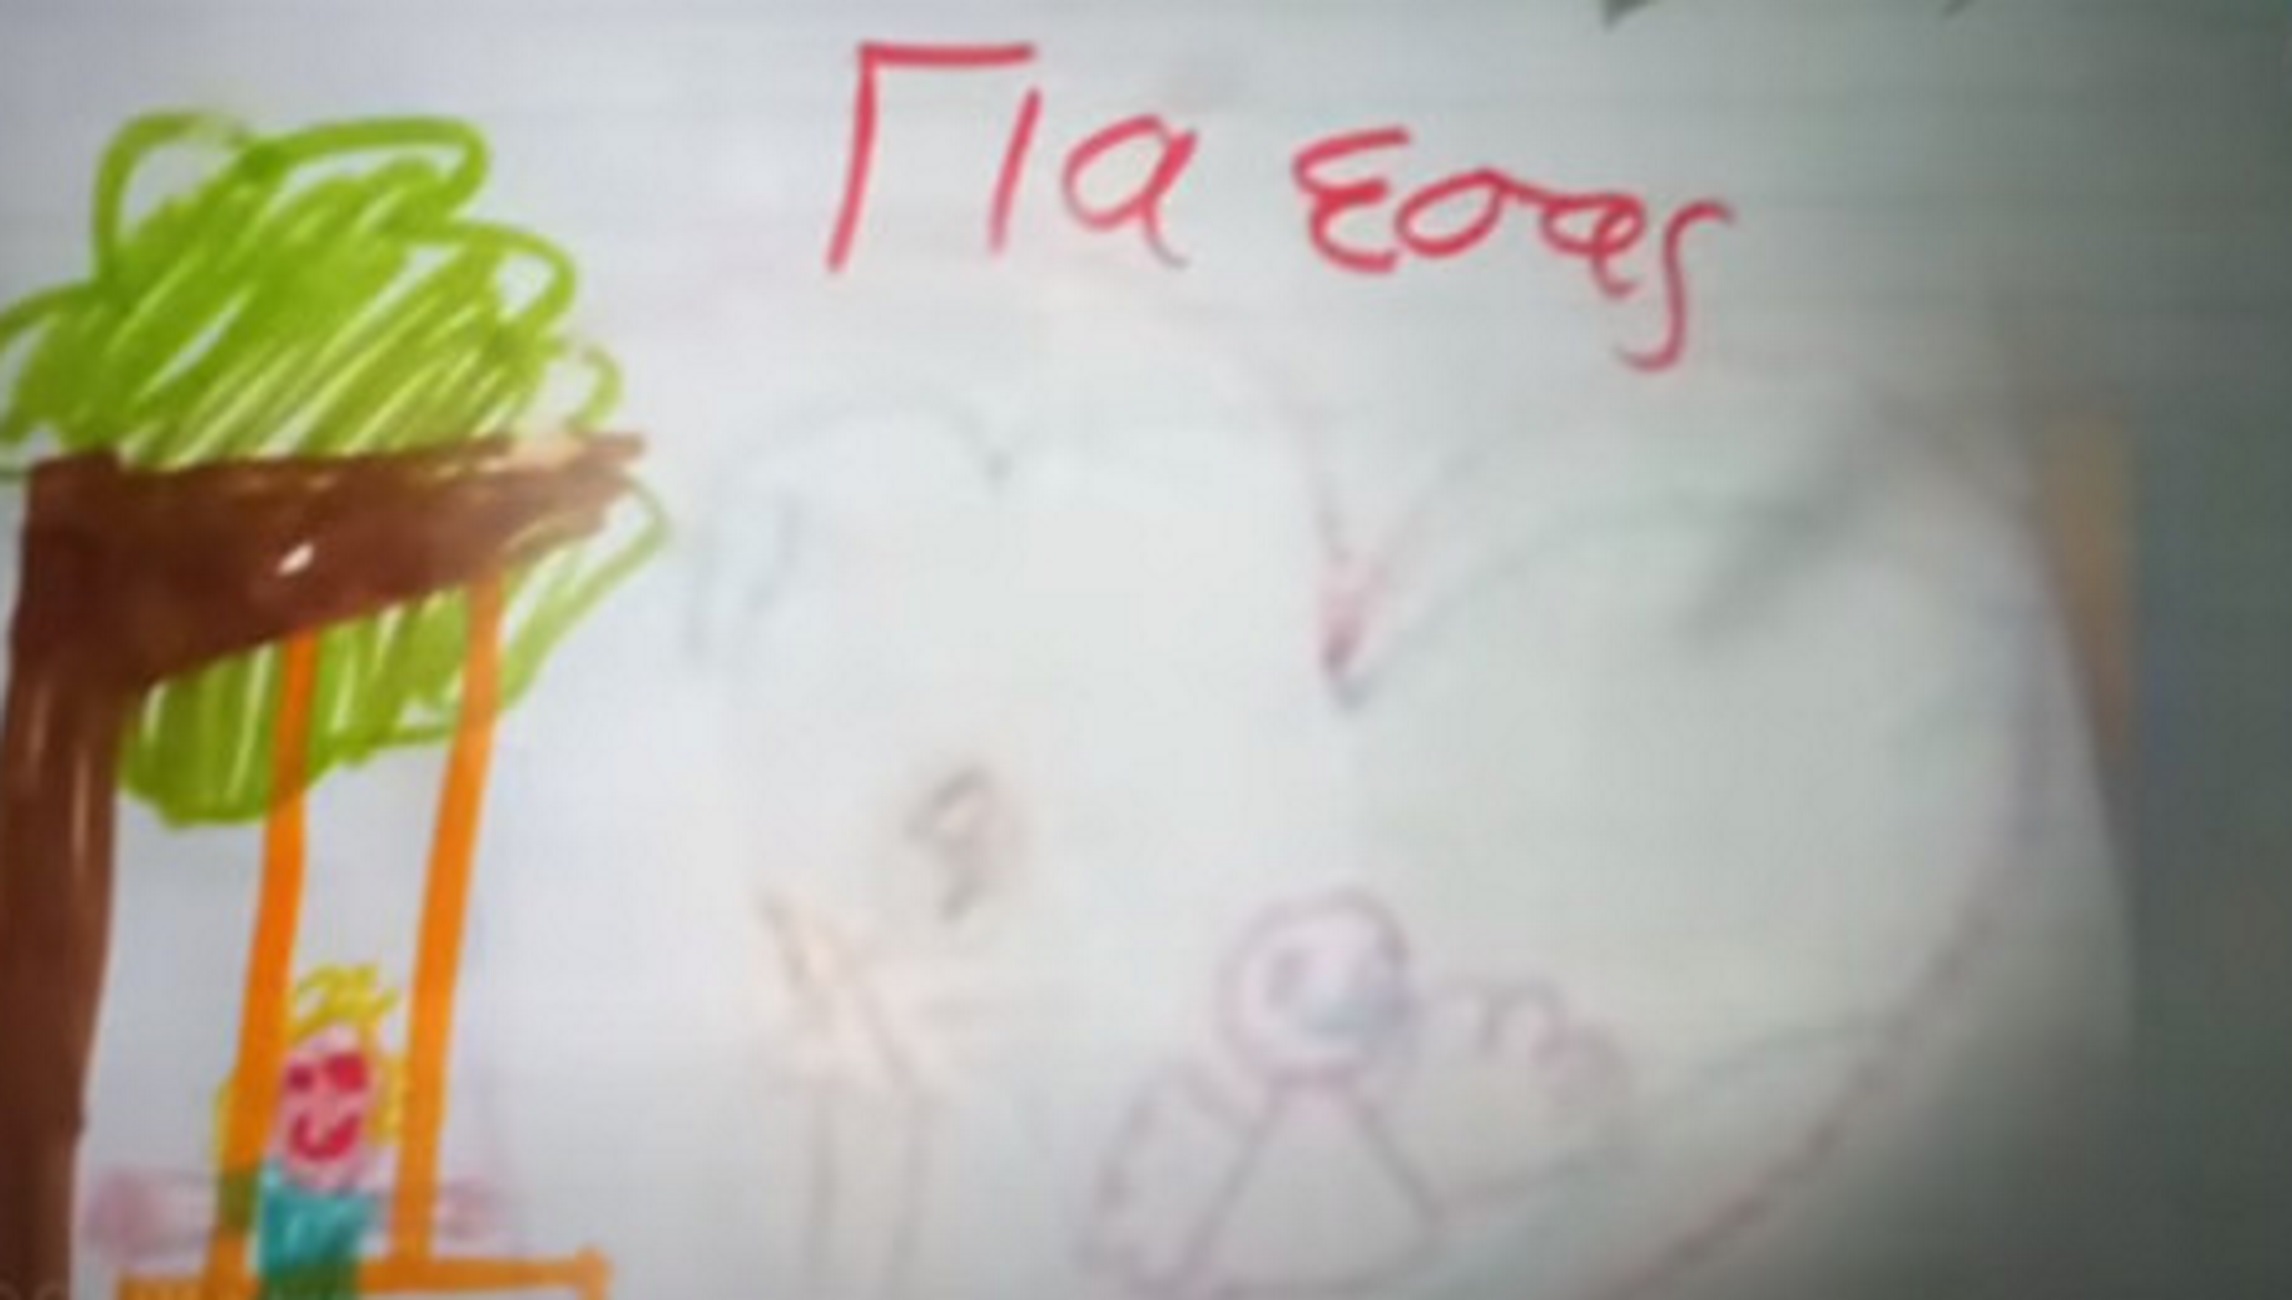 Θάνατος τριών παιδιών στην Πάτρα: Αυτή είναι η προφητική ζωγραφιά της Τζωρτζίνας λίγο πριν πεθάνει